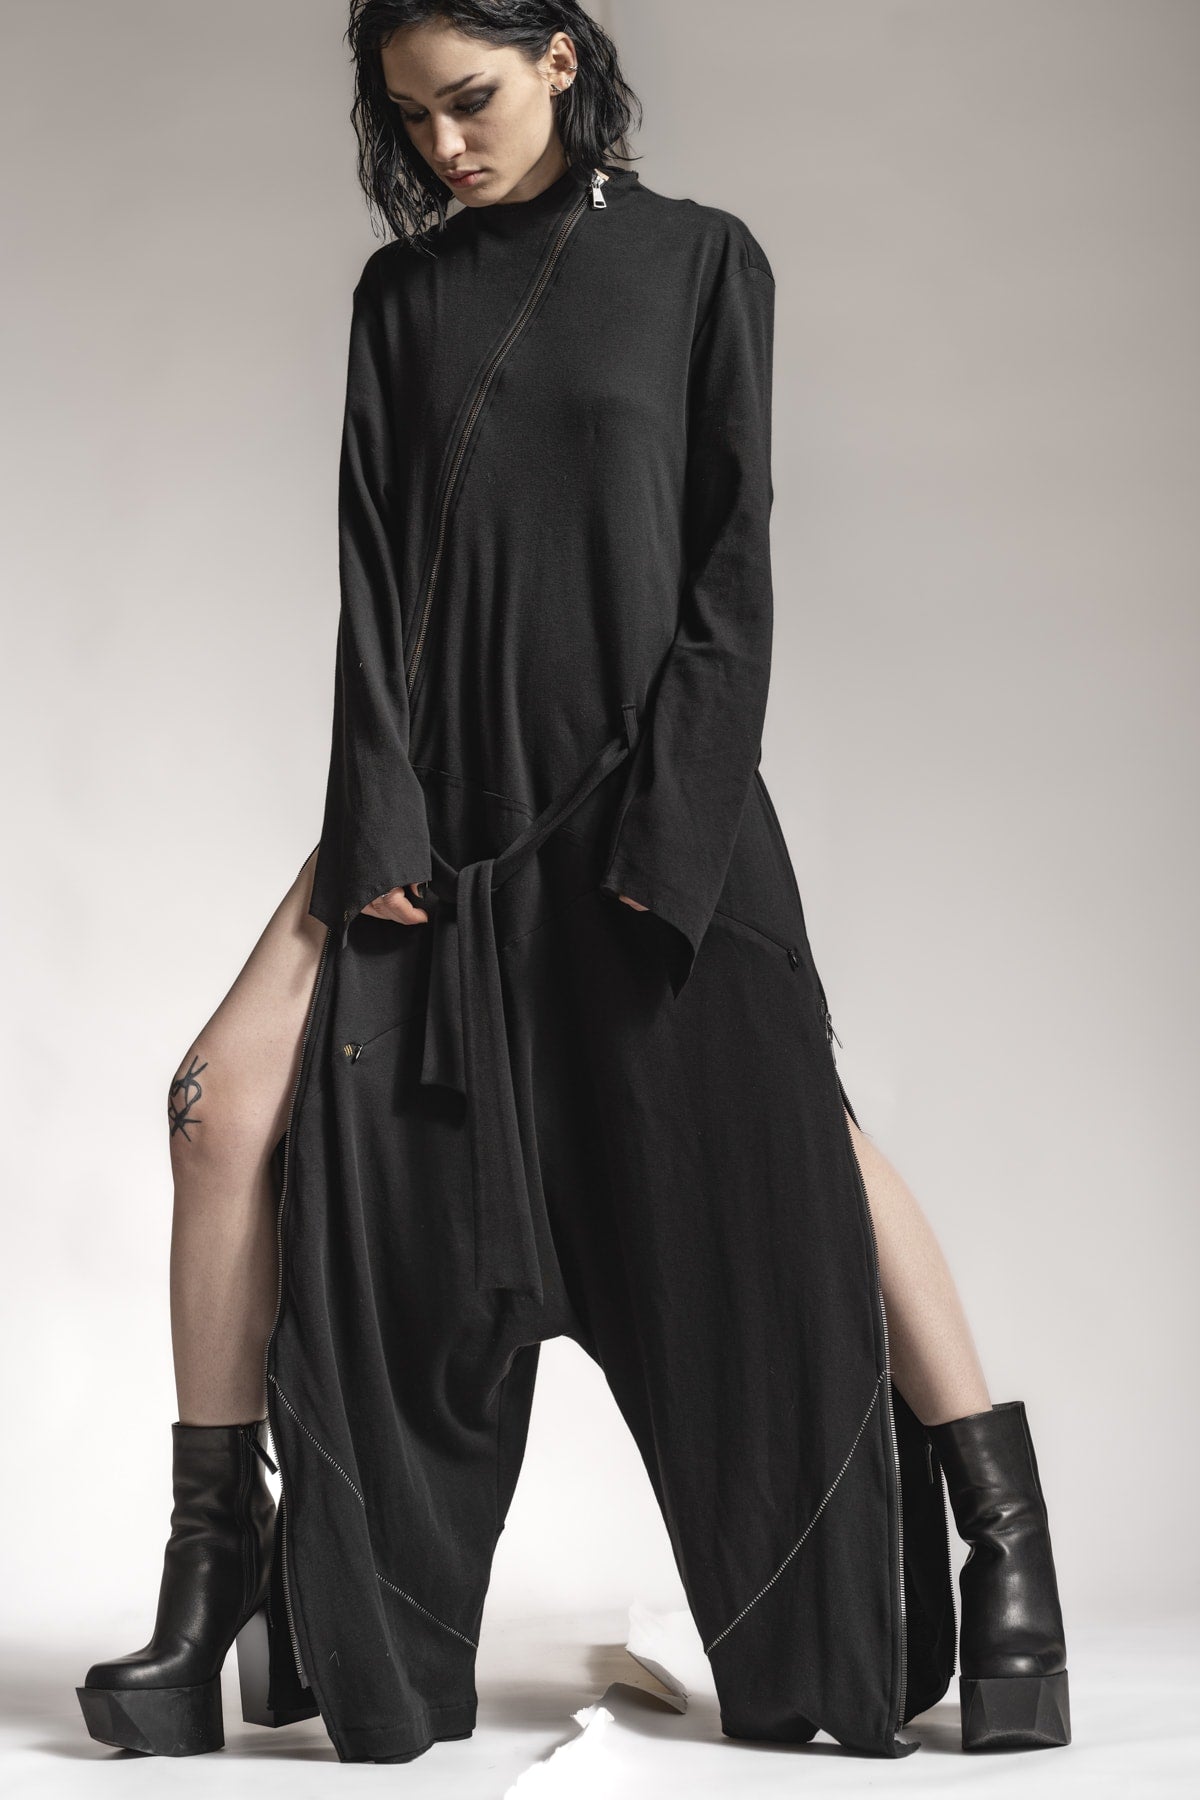 Avant-garde fashion for women and men by eigensinnig wien